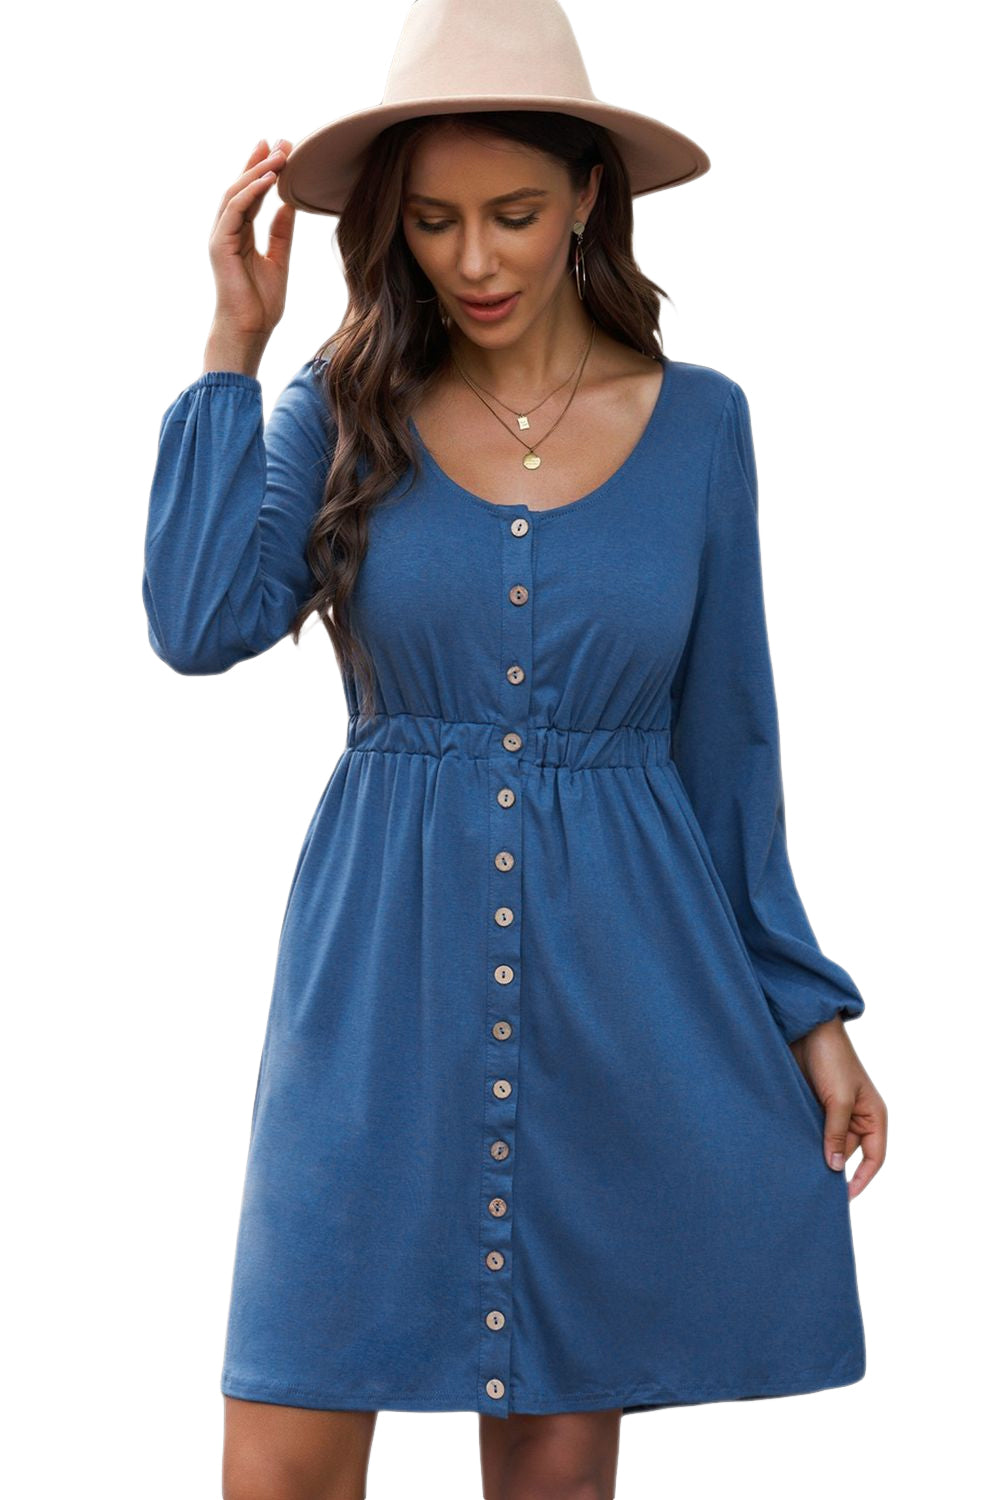 Blaues, langärmliges Kleid mit Knopfleiste und hoher Taille